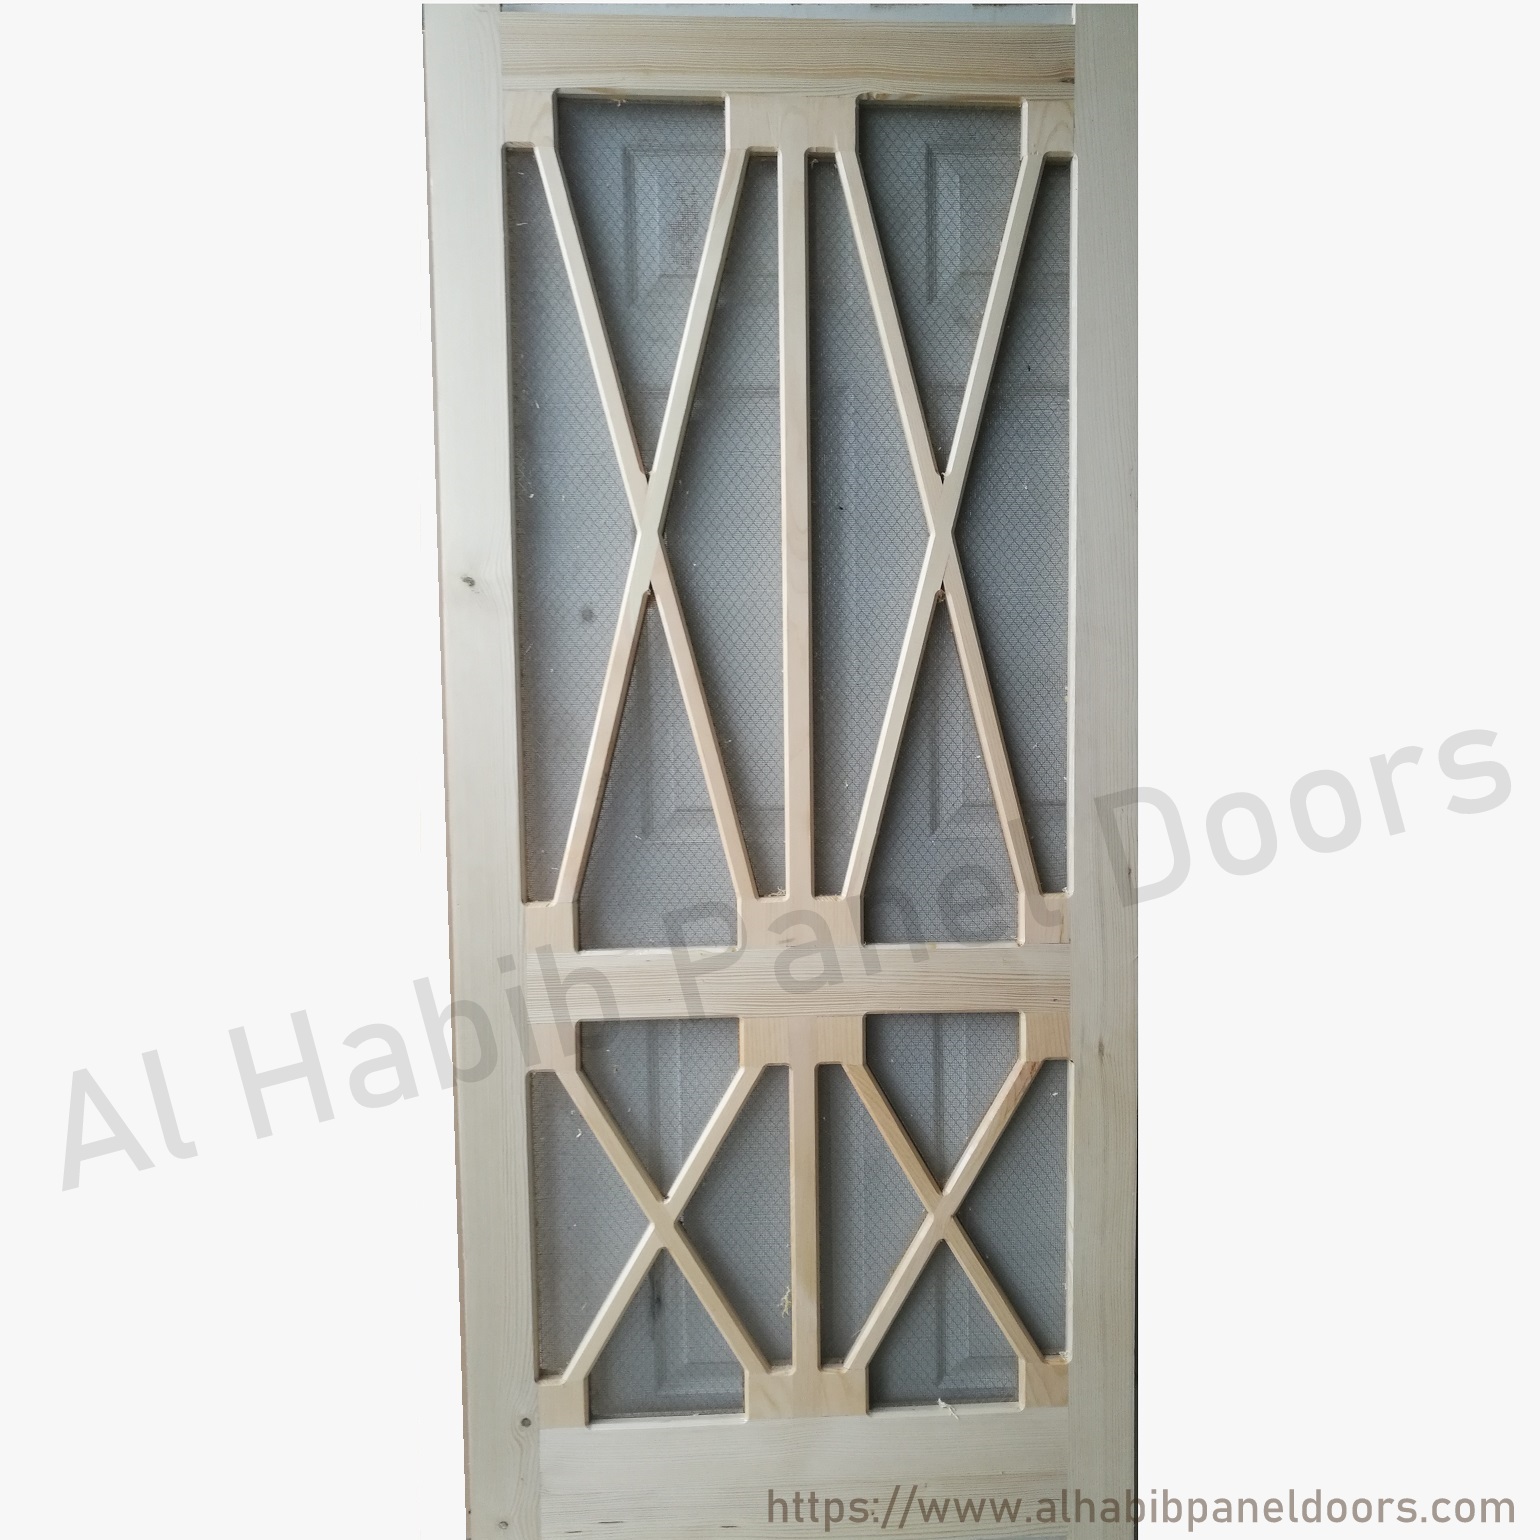 Pertal Wood Wire Mesh Door Double Xx Design